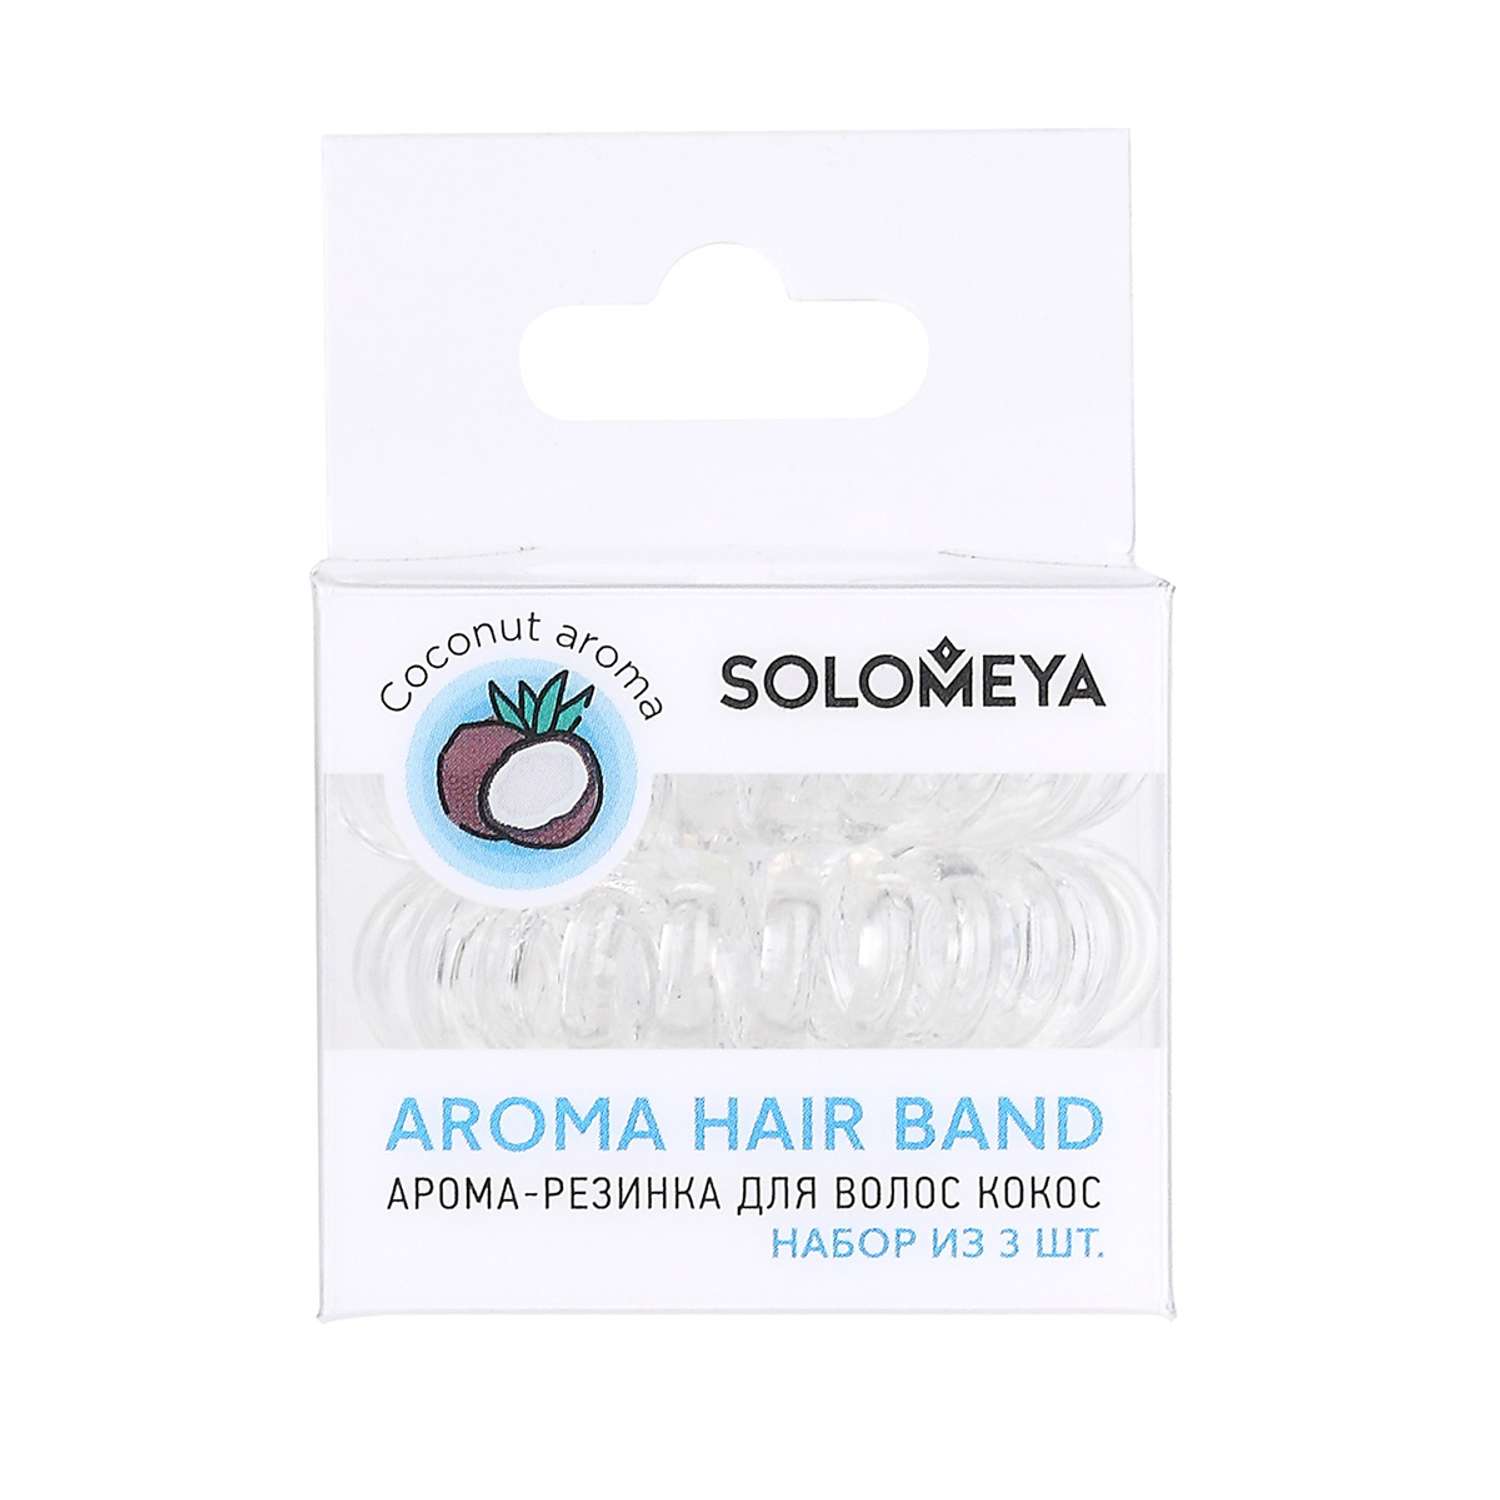 Арома-резинка для волос SOLOMEYA Кокос набор из 3 шт - фото 1